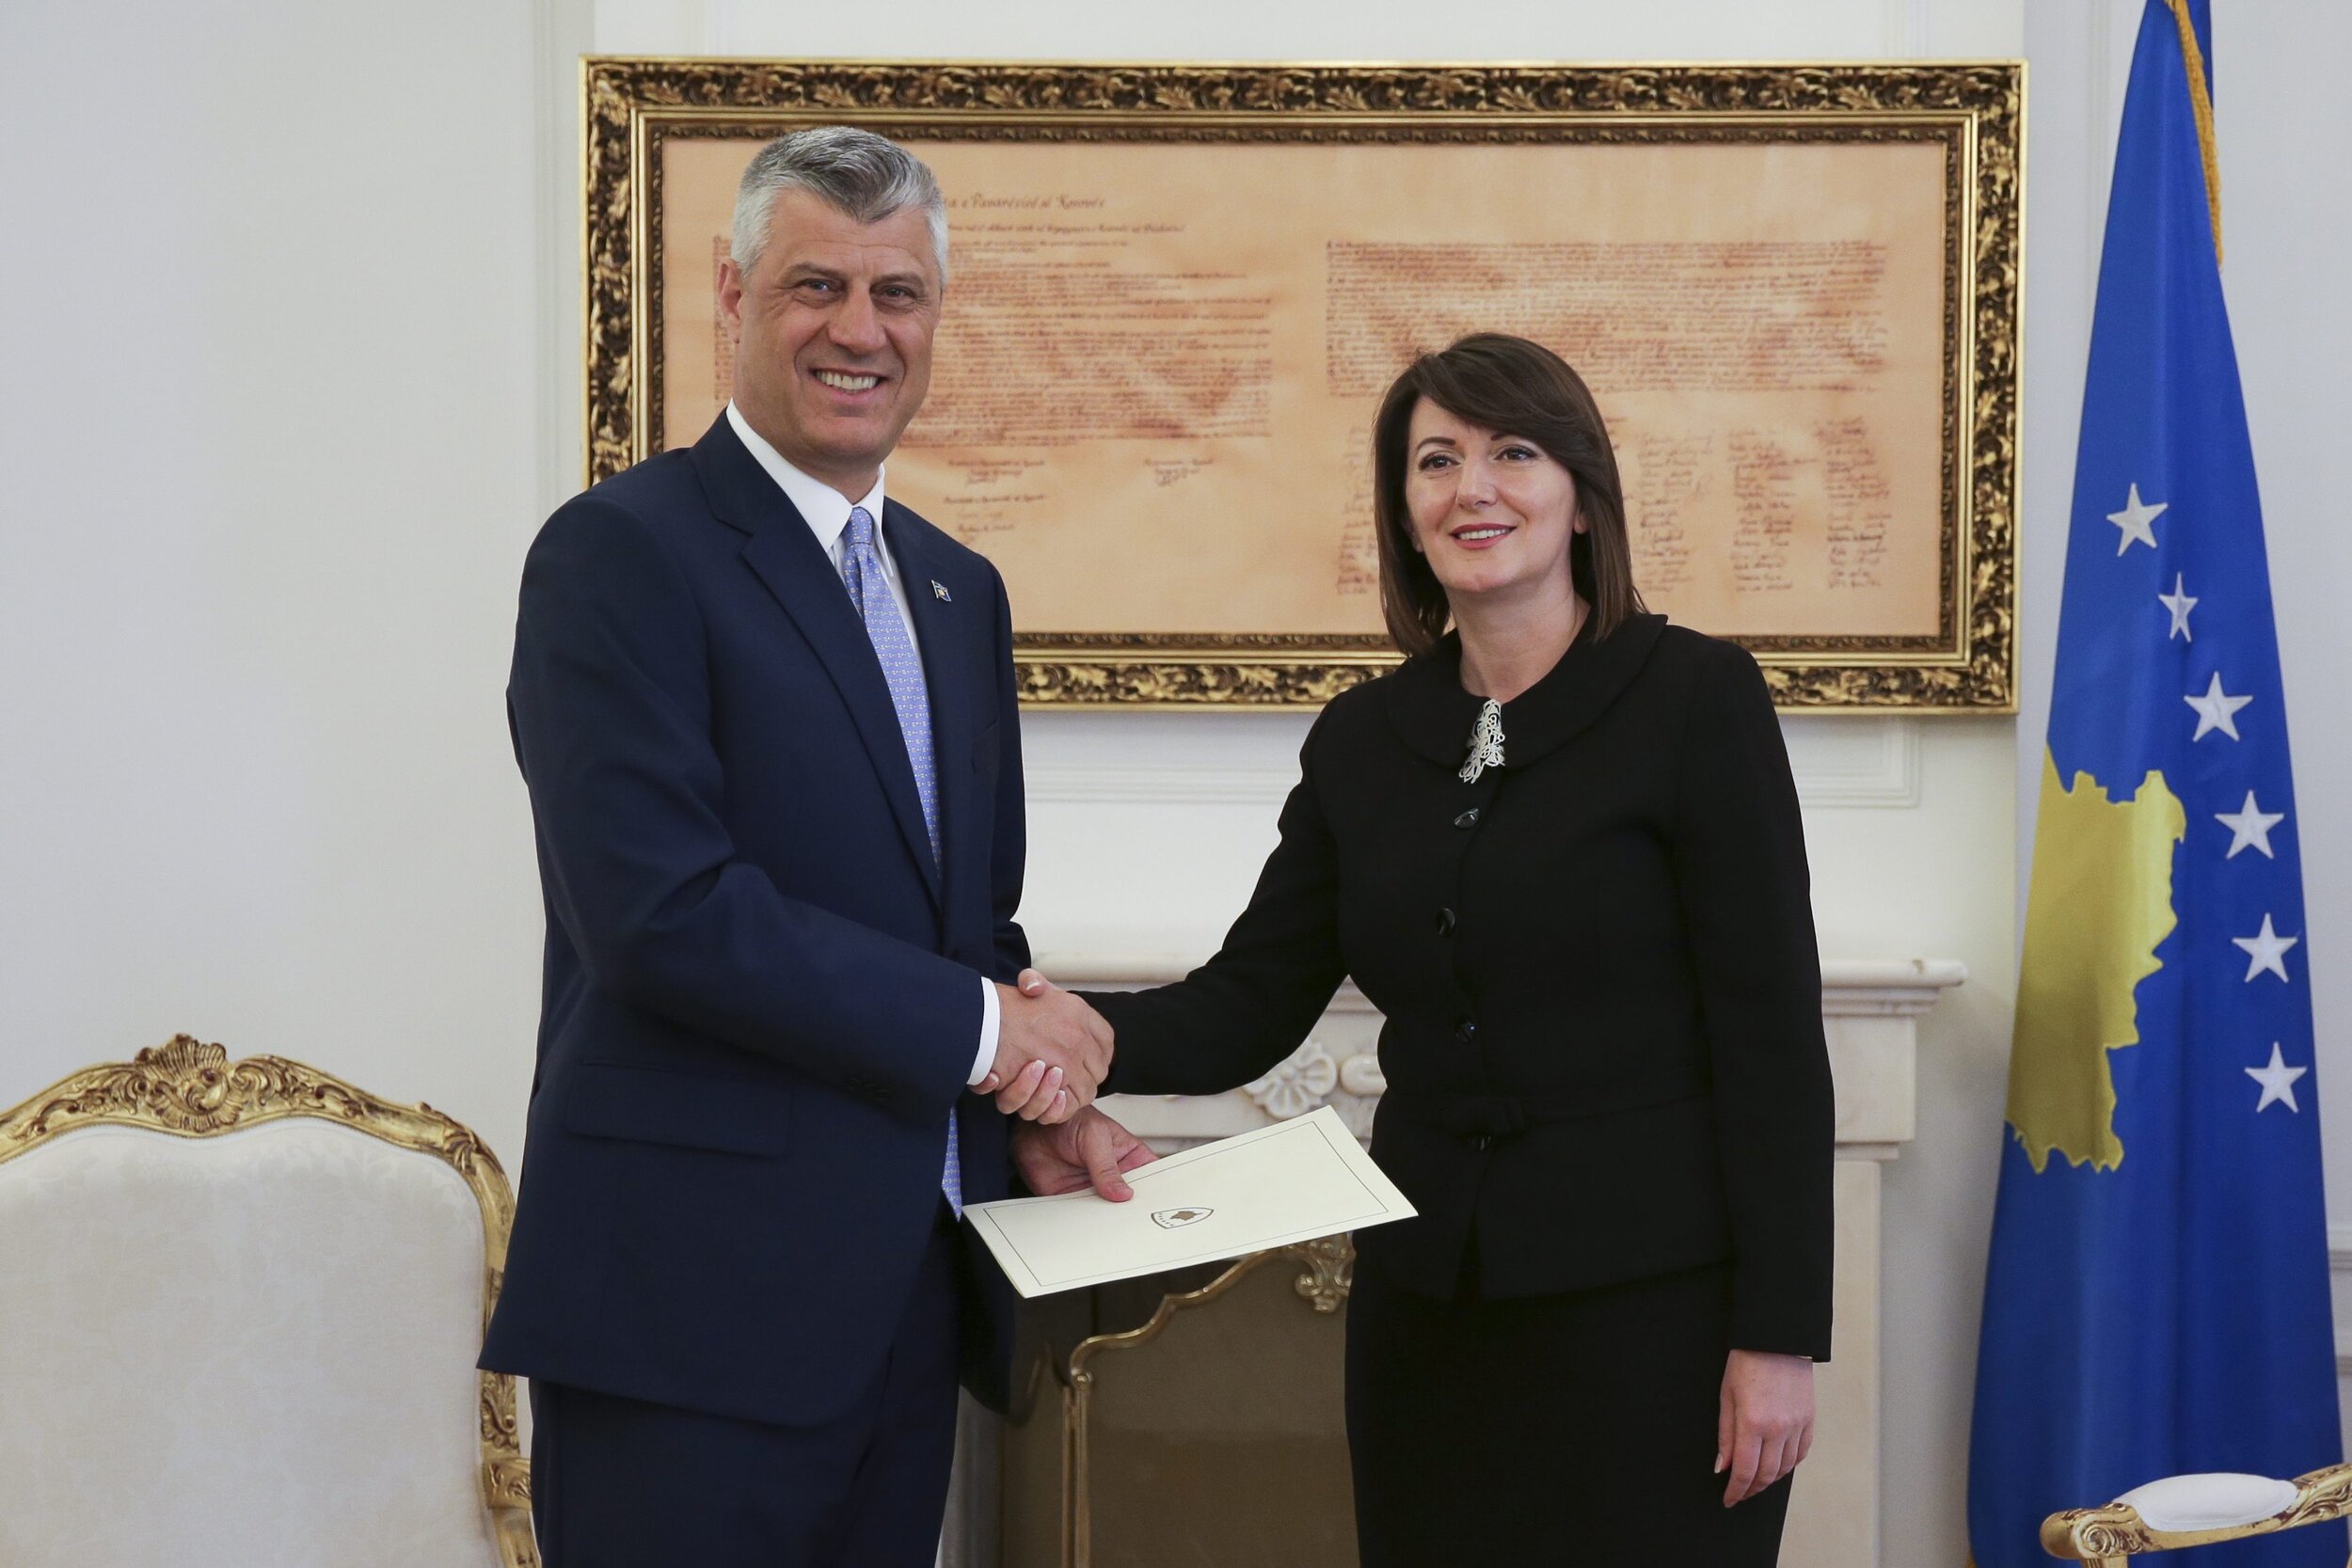 Kosovo: President Hashim Thaçi and Former President Atifete Jahjaga